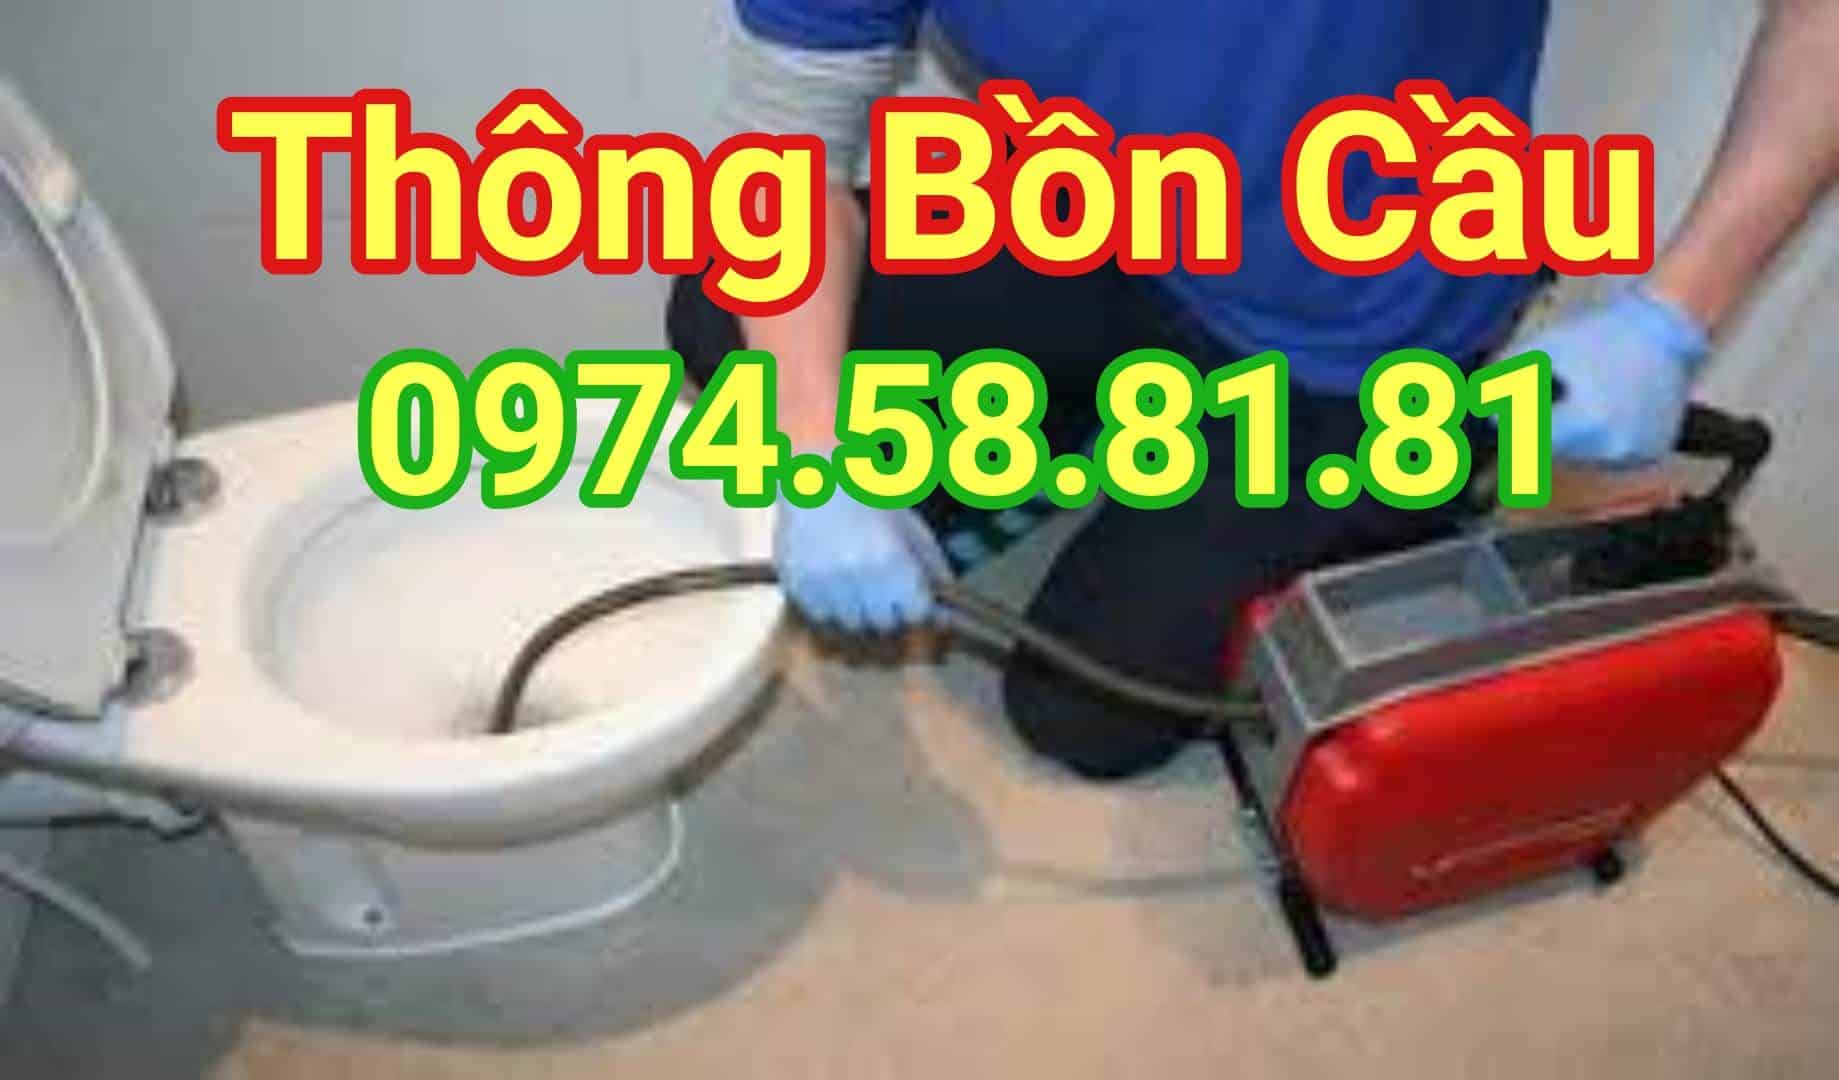 thong-bon-cau-an-khe